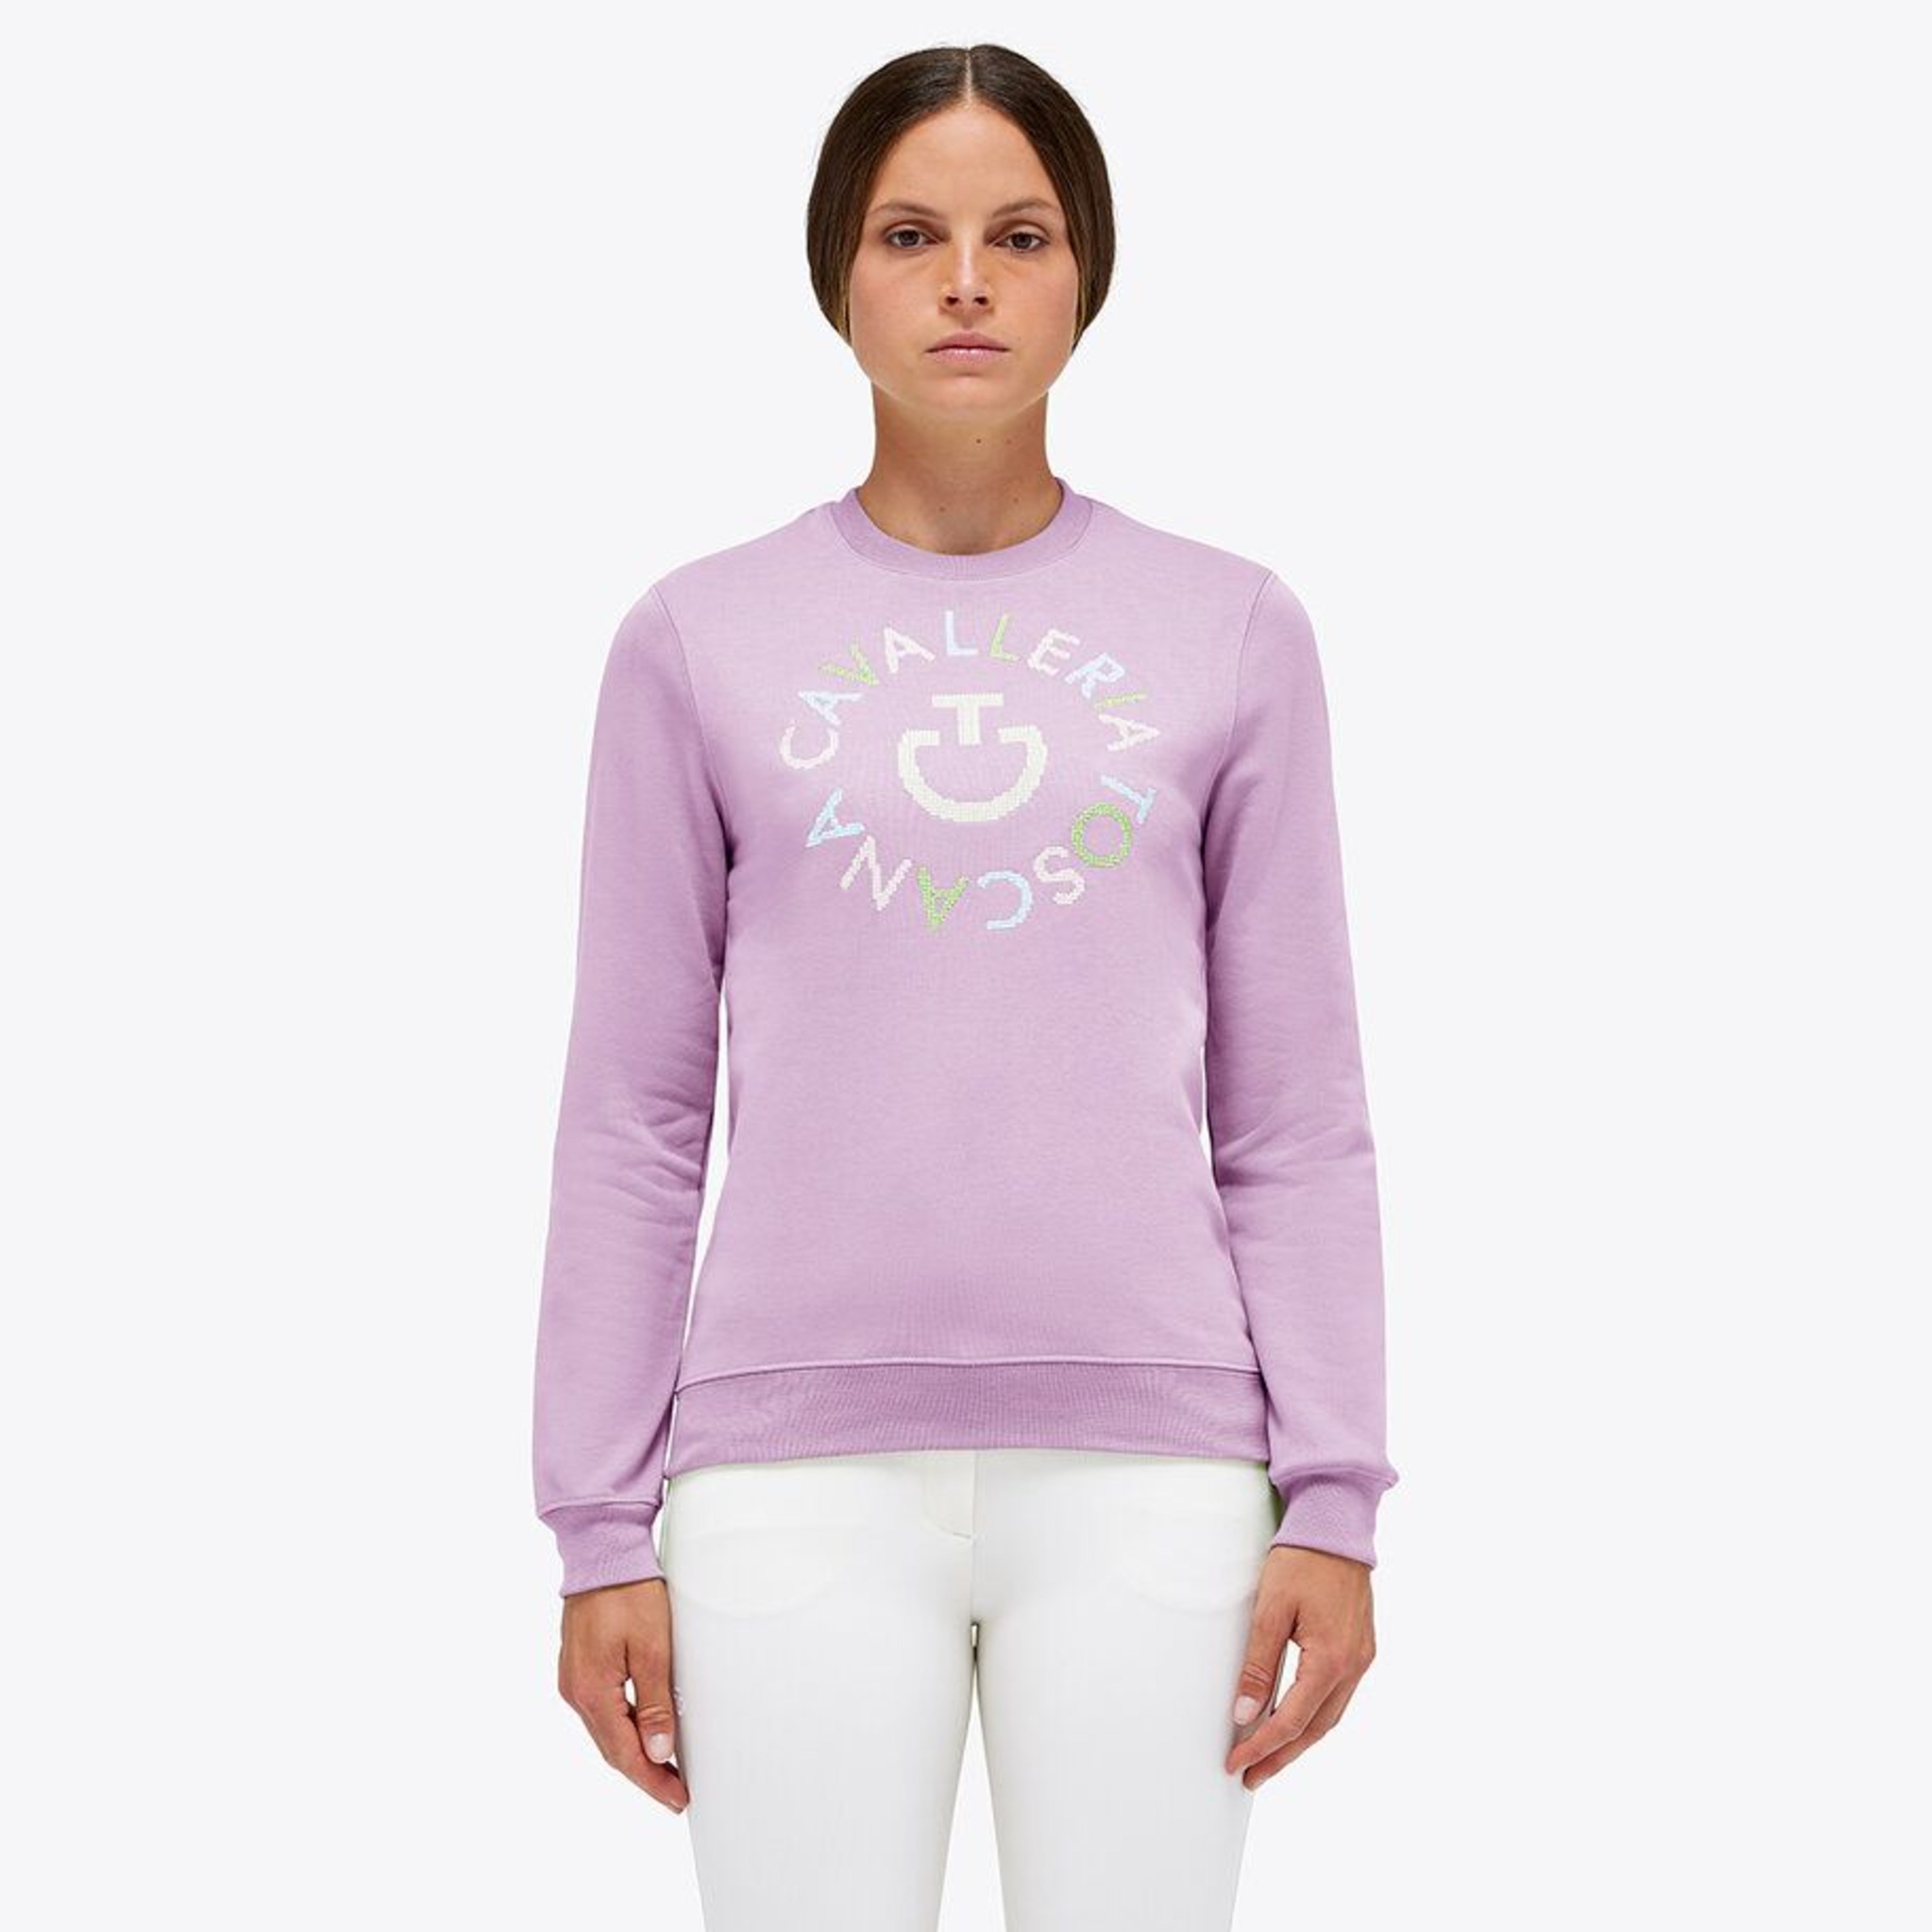 Cavalleria Toscana Pixel Sweatshirt ladies